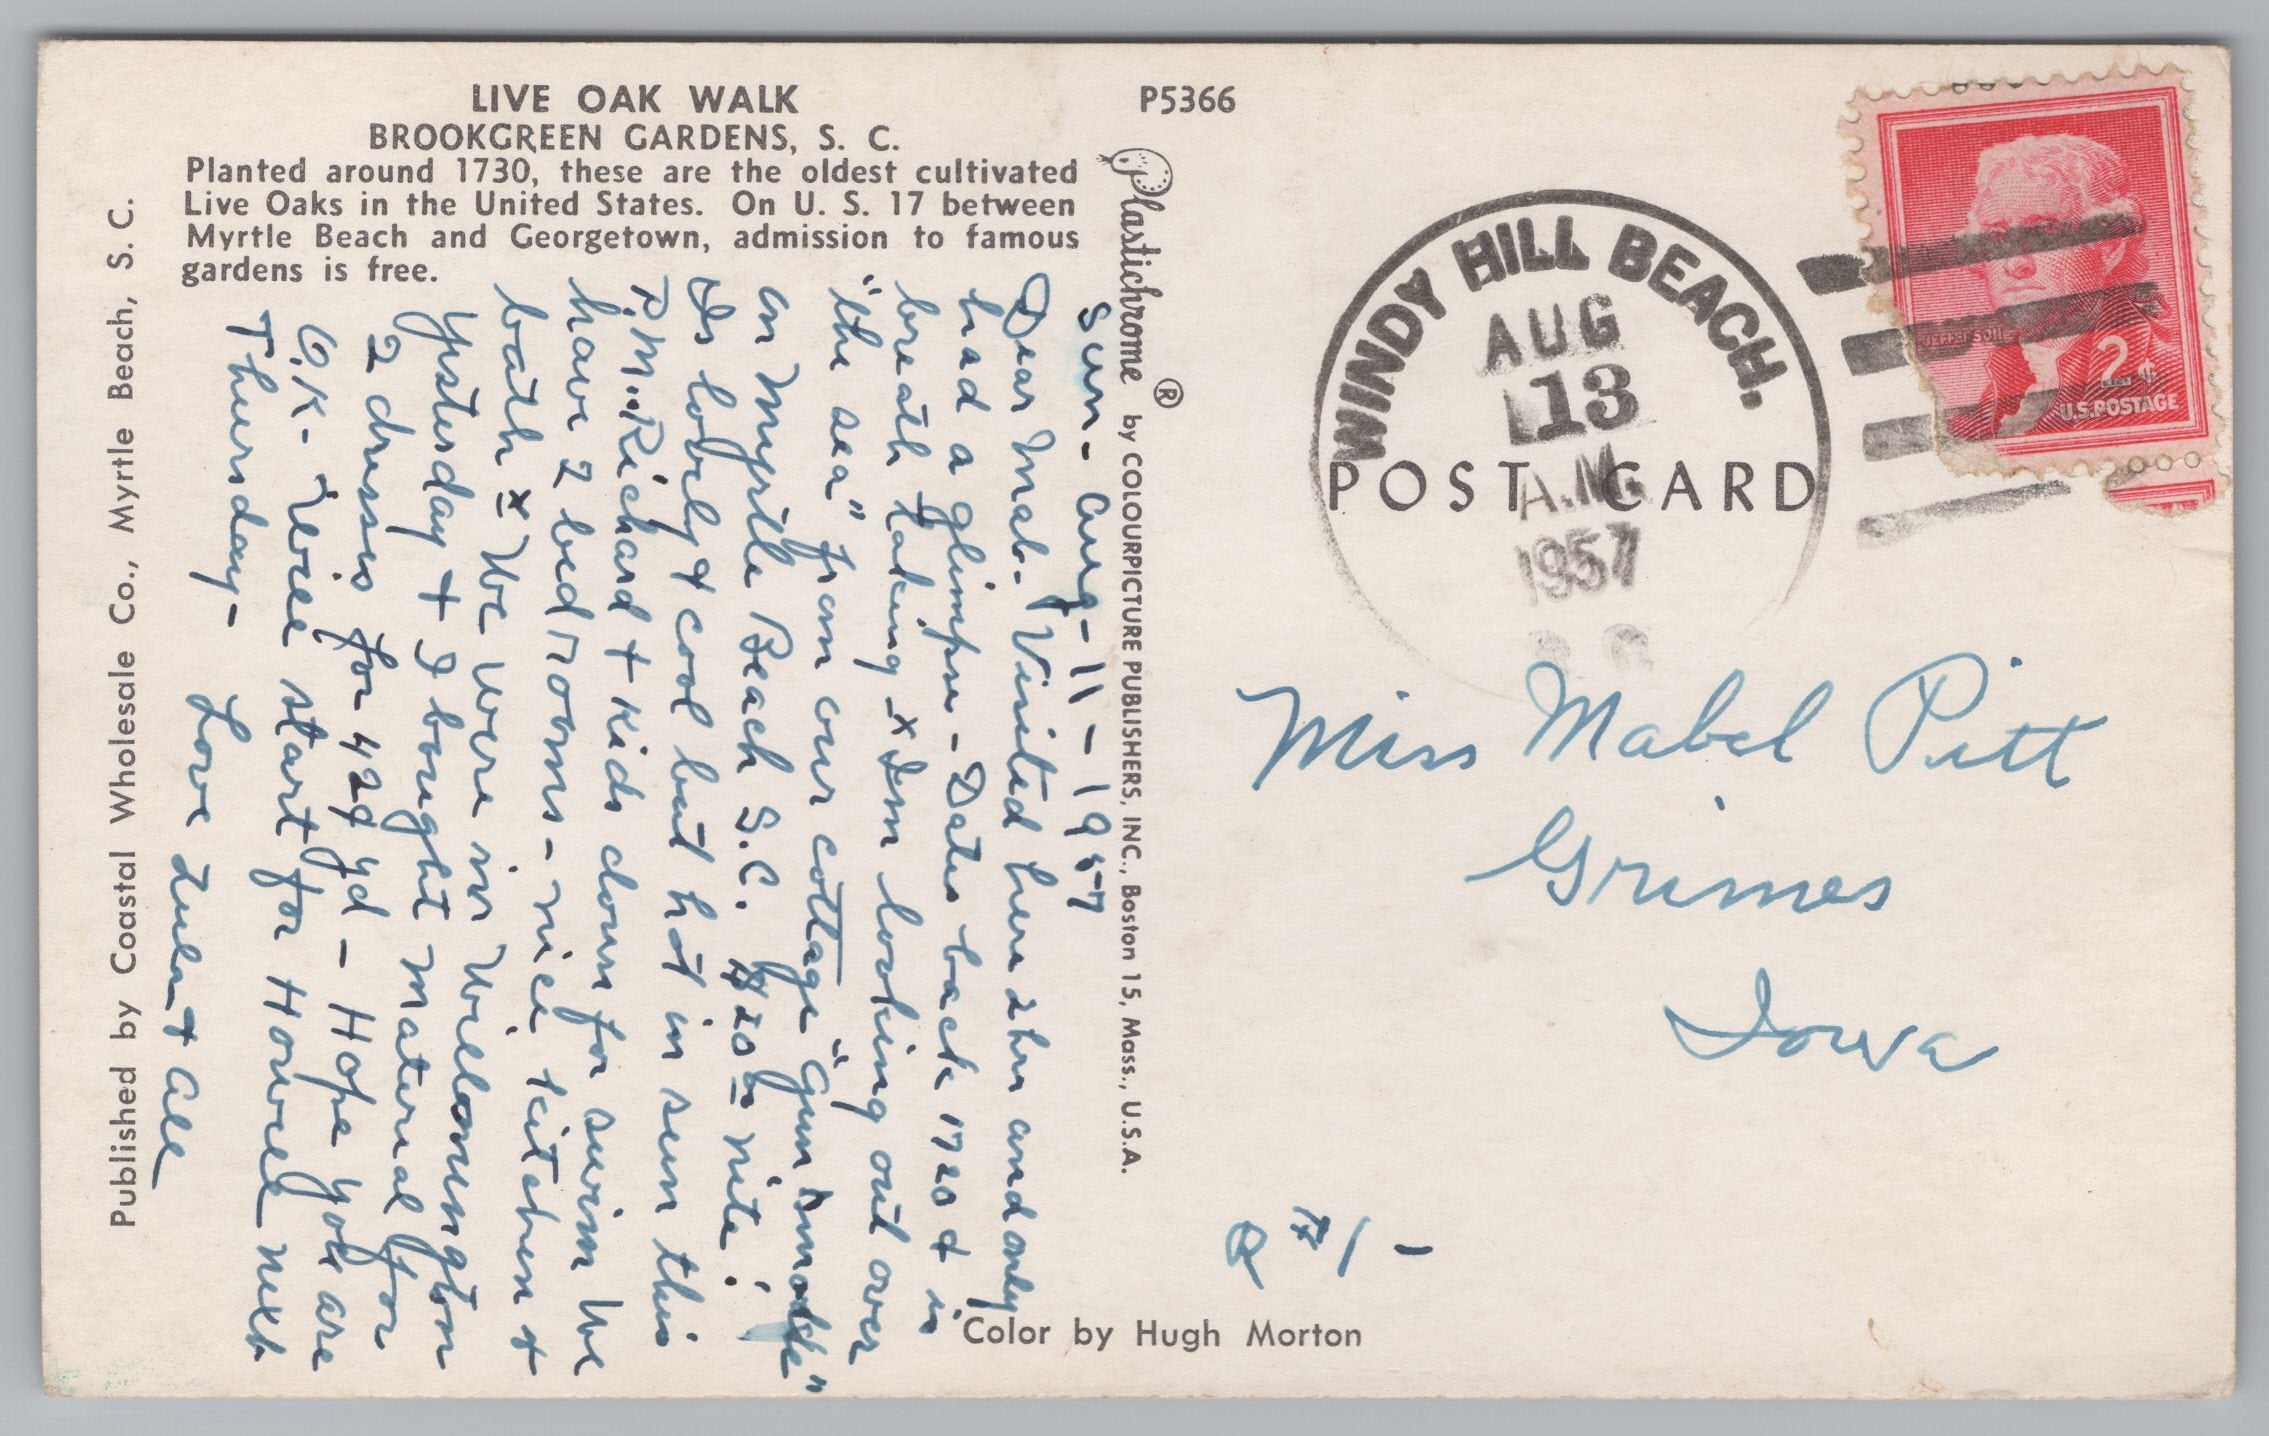 Live Oak Walk, Brookgreen Gardens, Vintage Post Card.